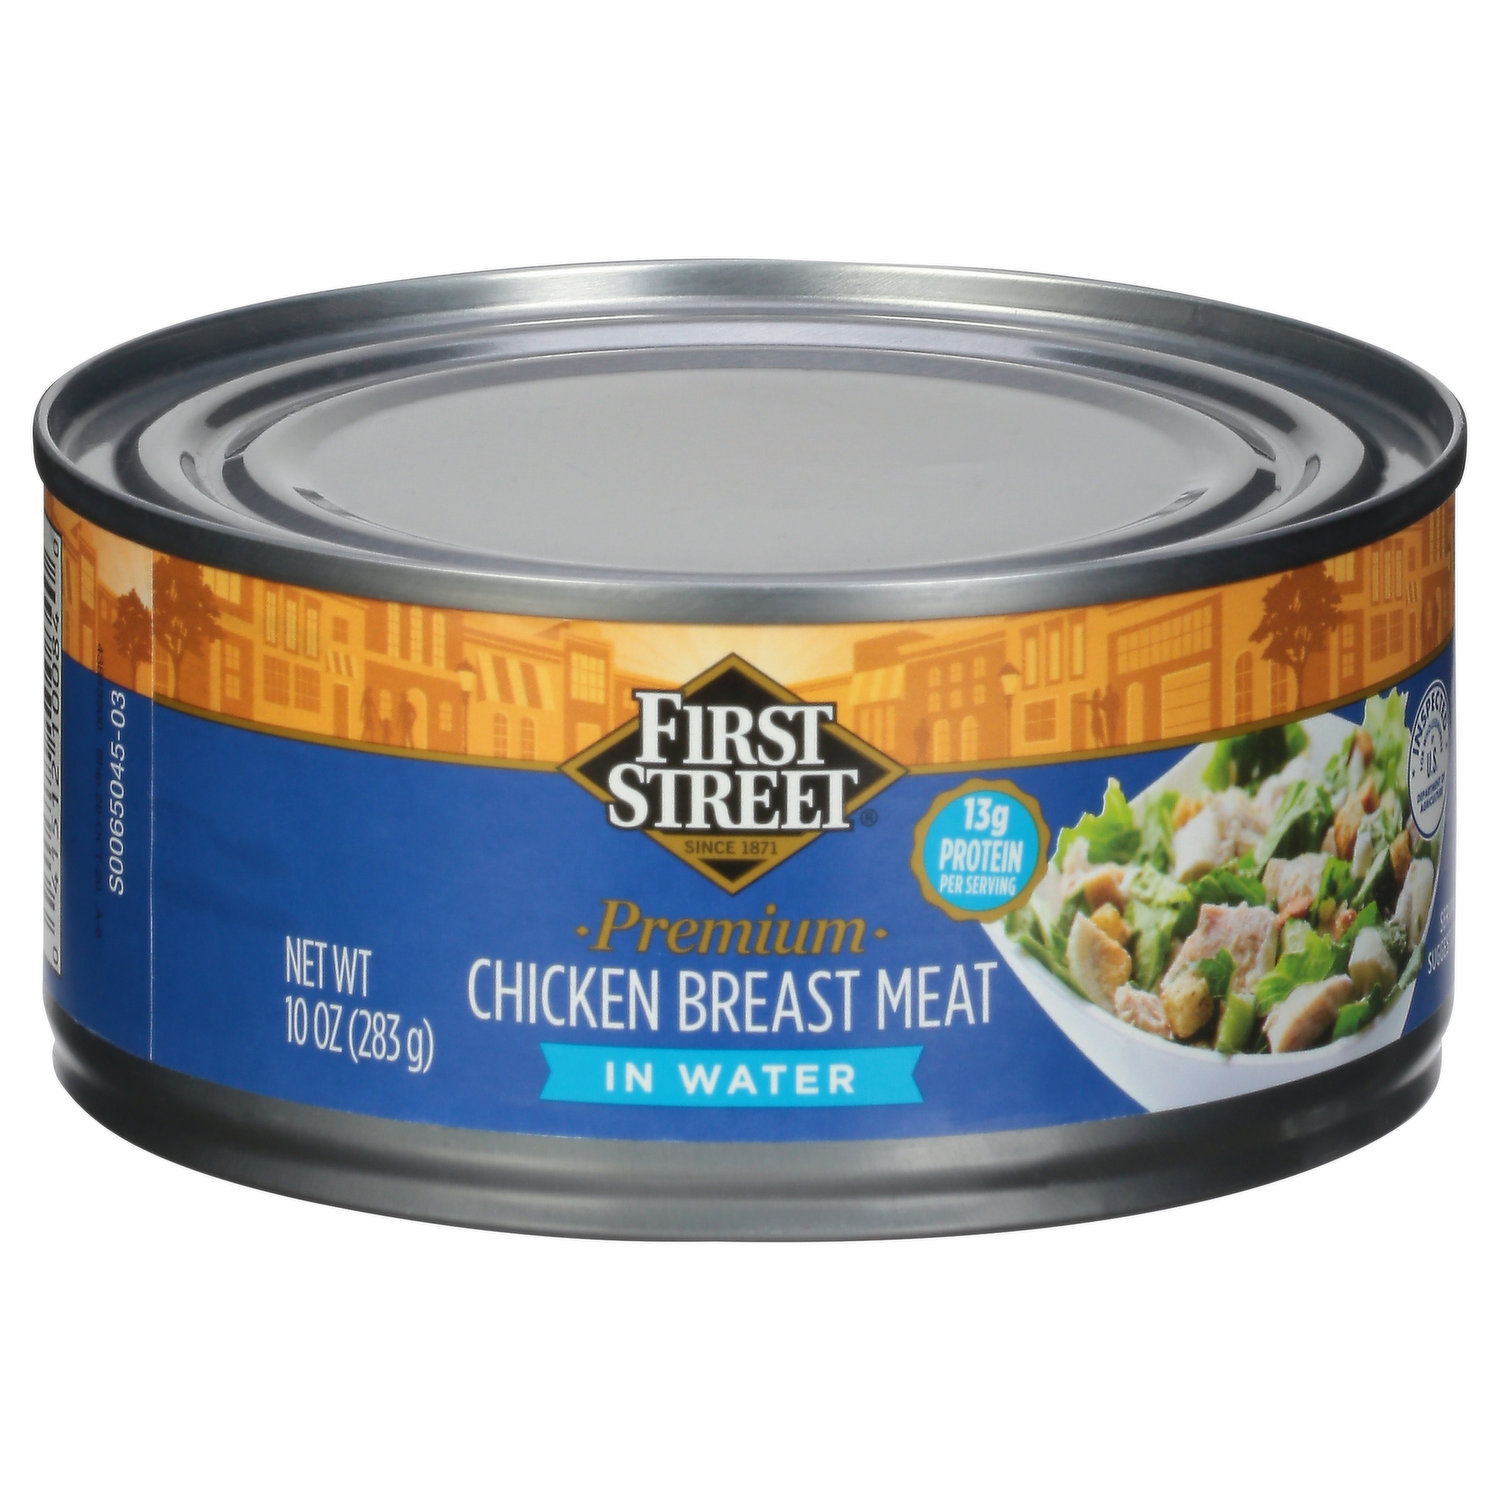 First Street Chicken Breast Meat, Premium - Smart & Final